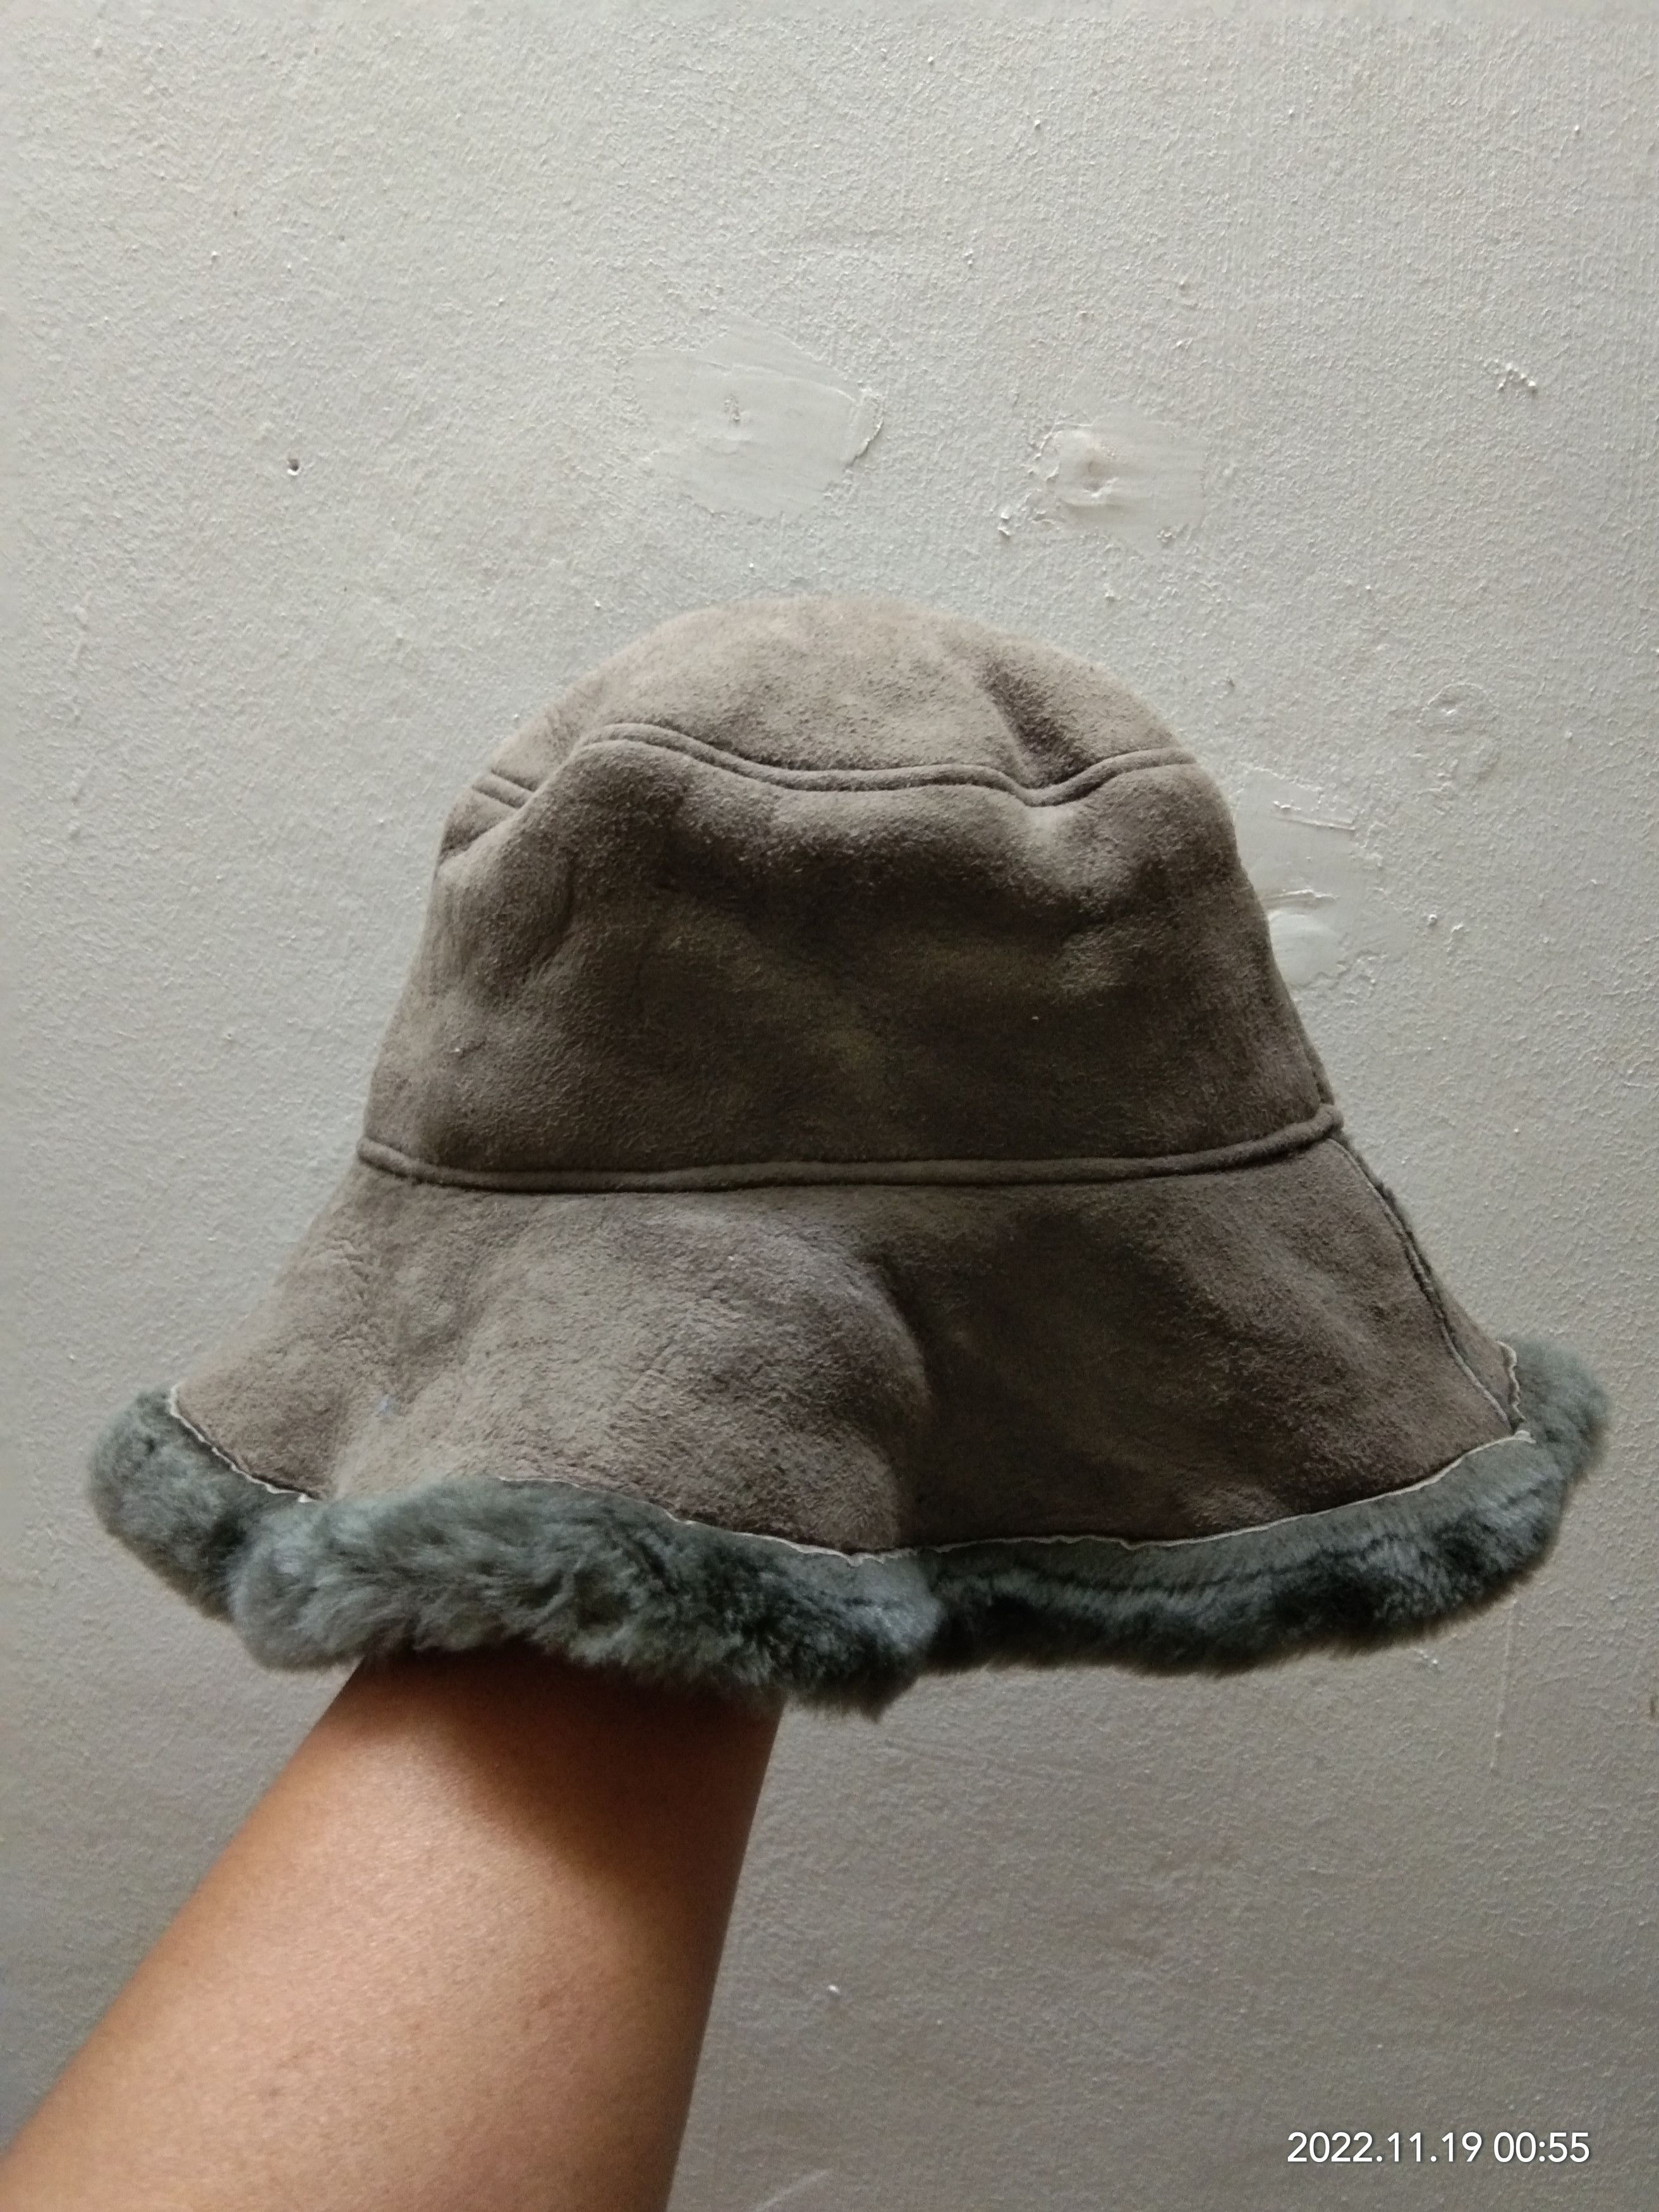 Leather - OWEN BARRY SHEEPSKIN HAT - 1